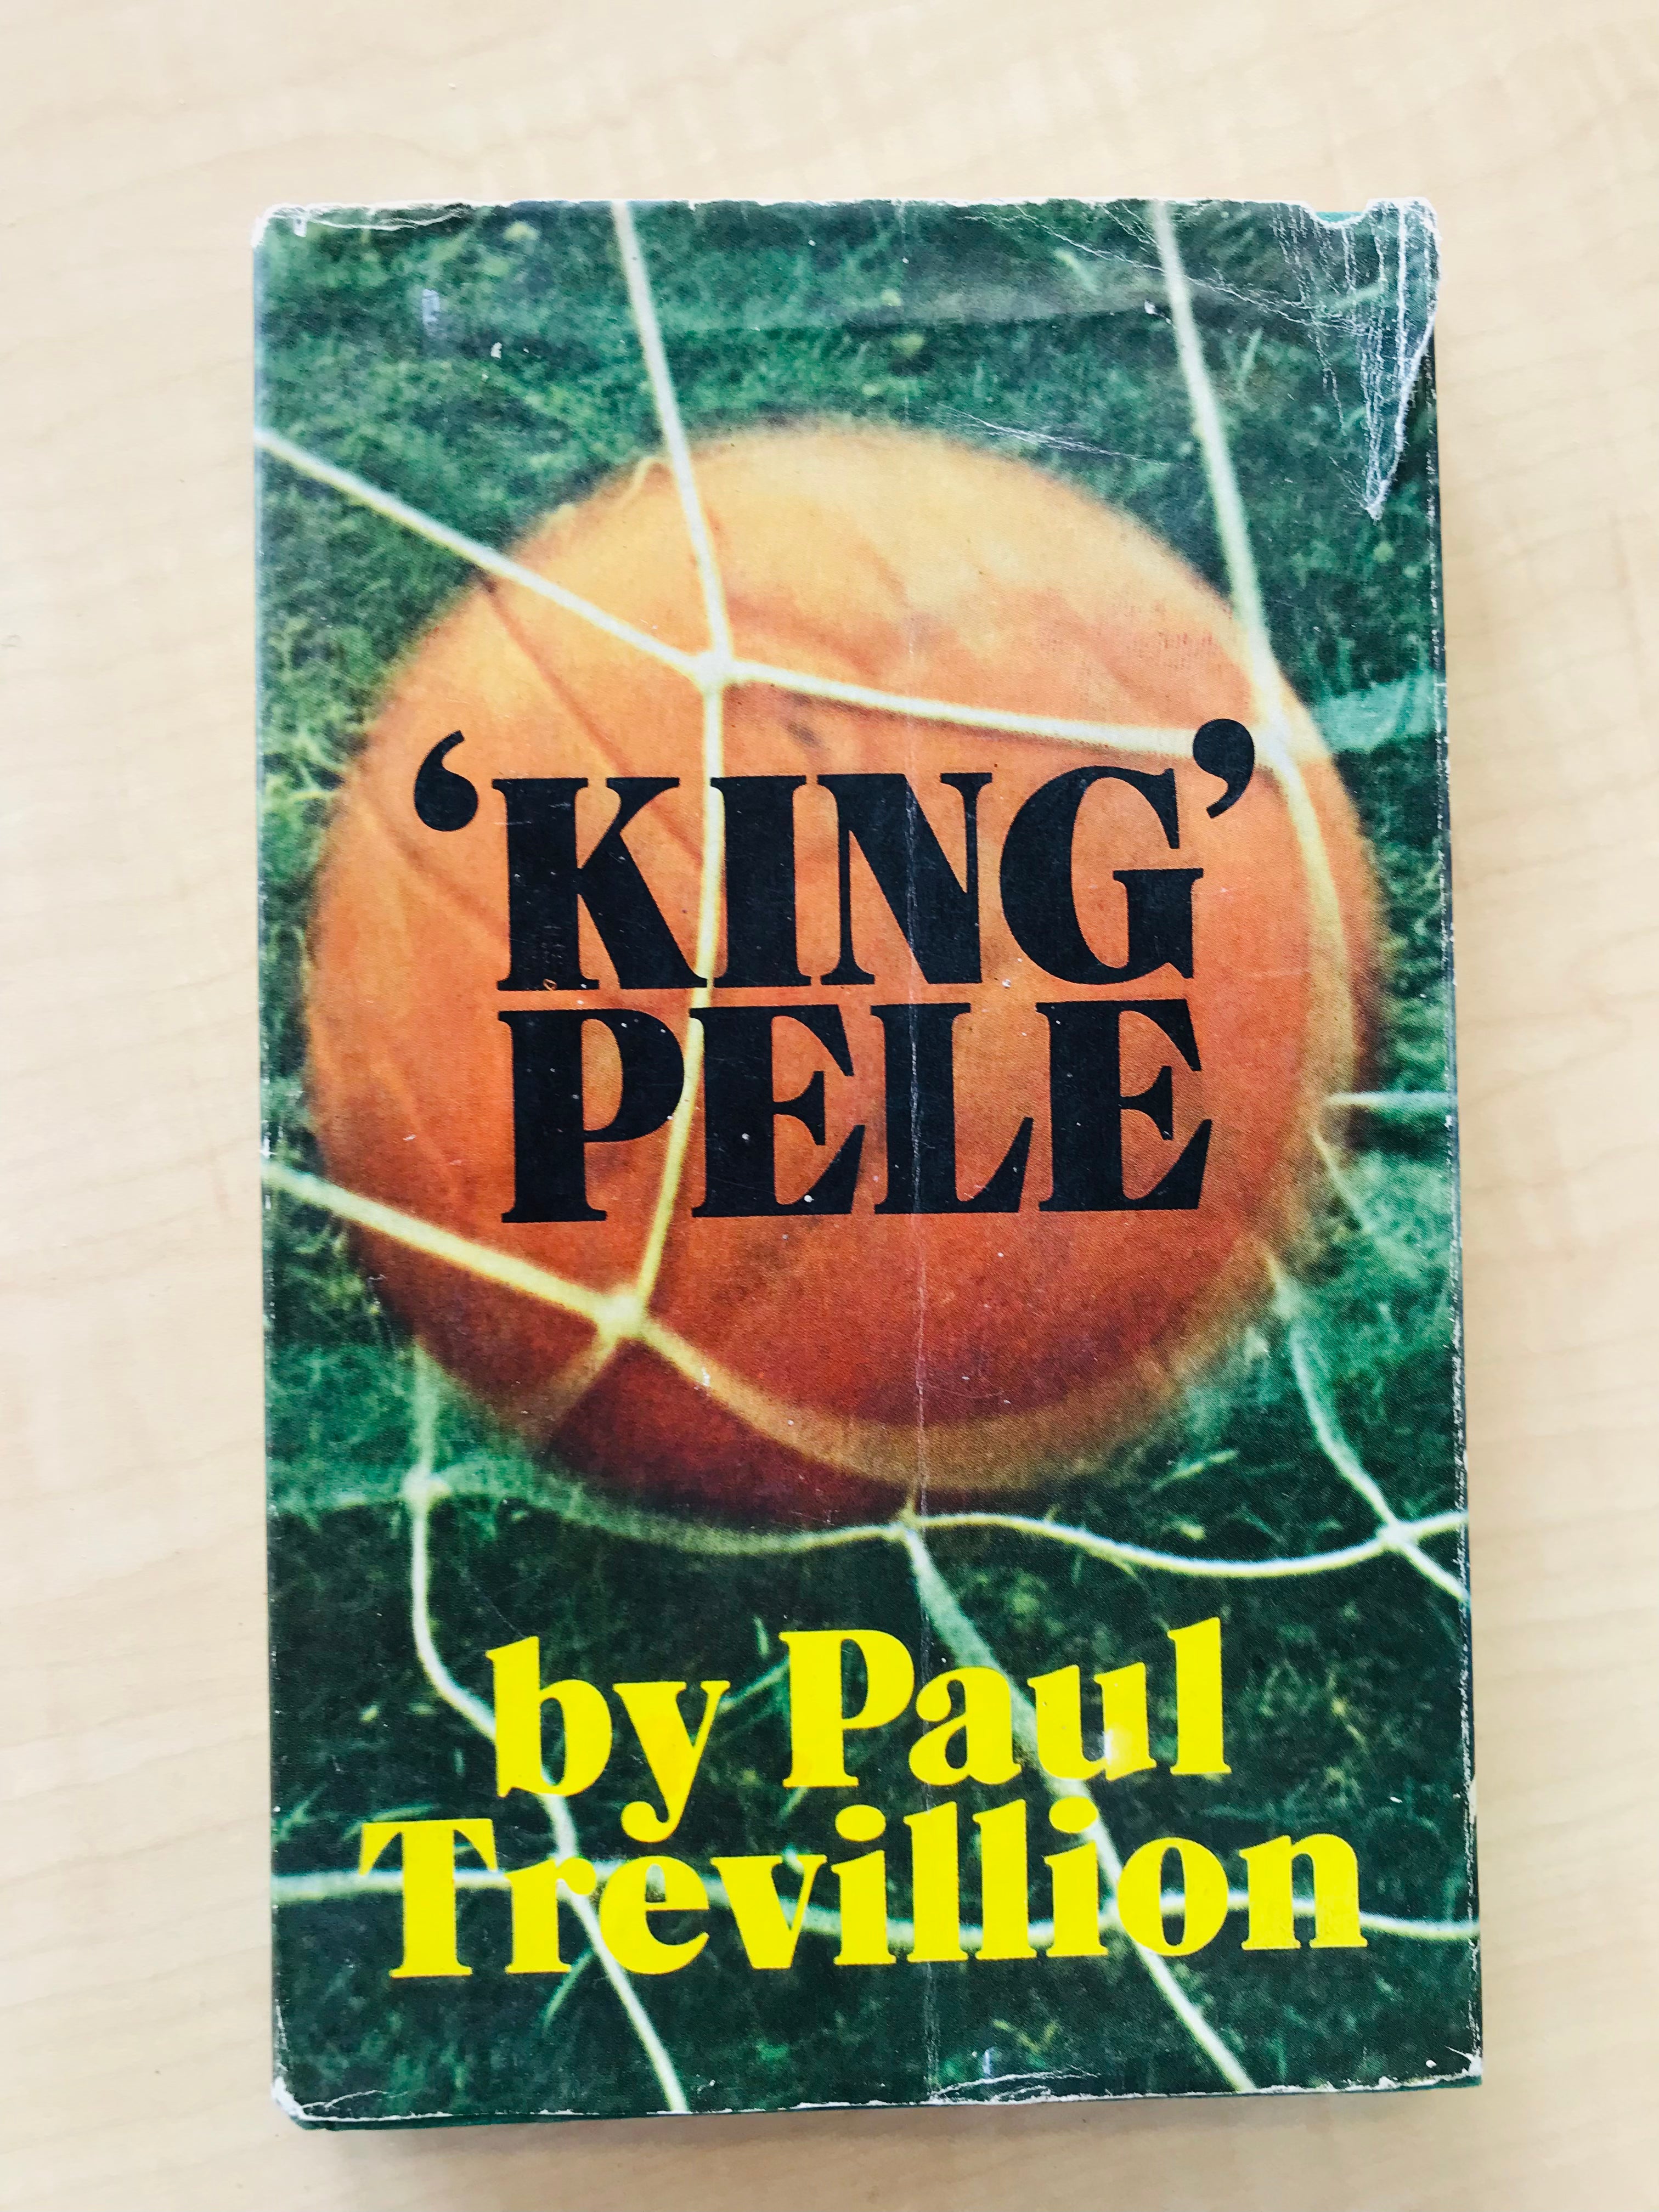 King Pele by Paul Trevillion